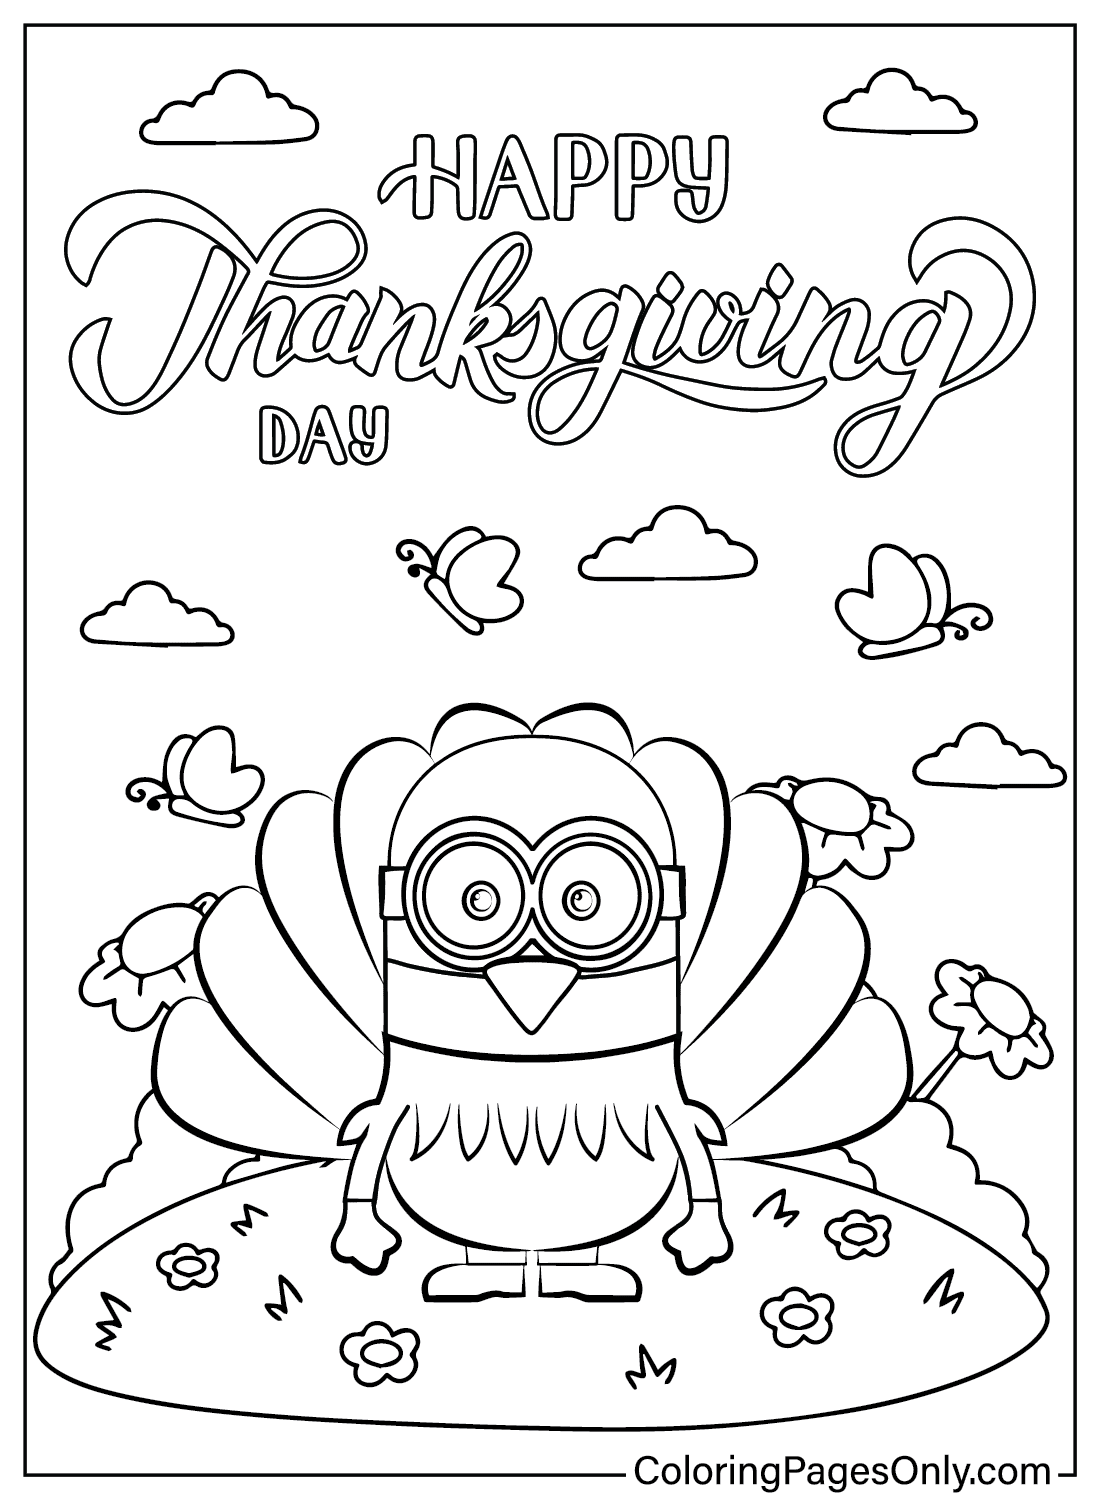 Página para colorear de Minion de Acción de Gracias de dibujos animados de Acción de Gracias